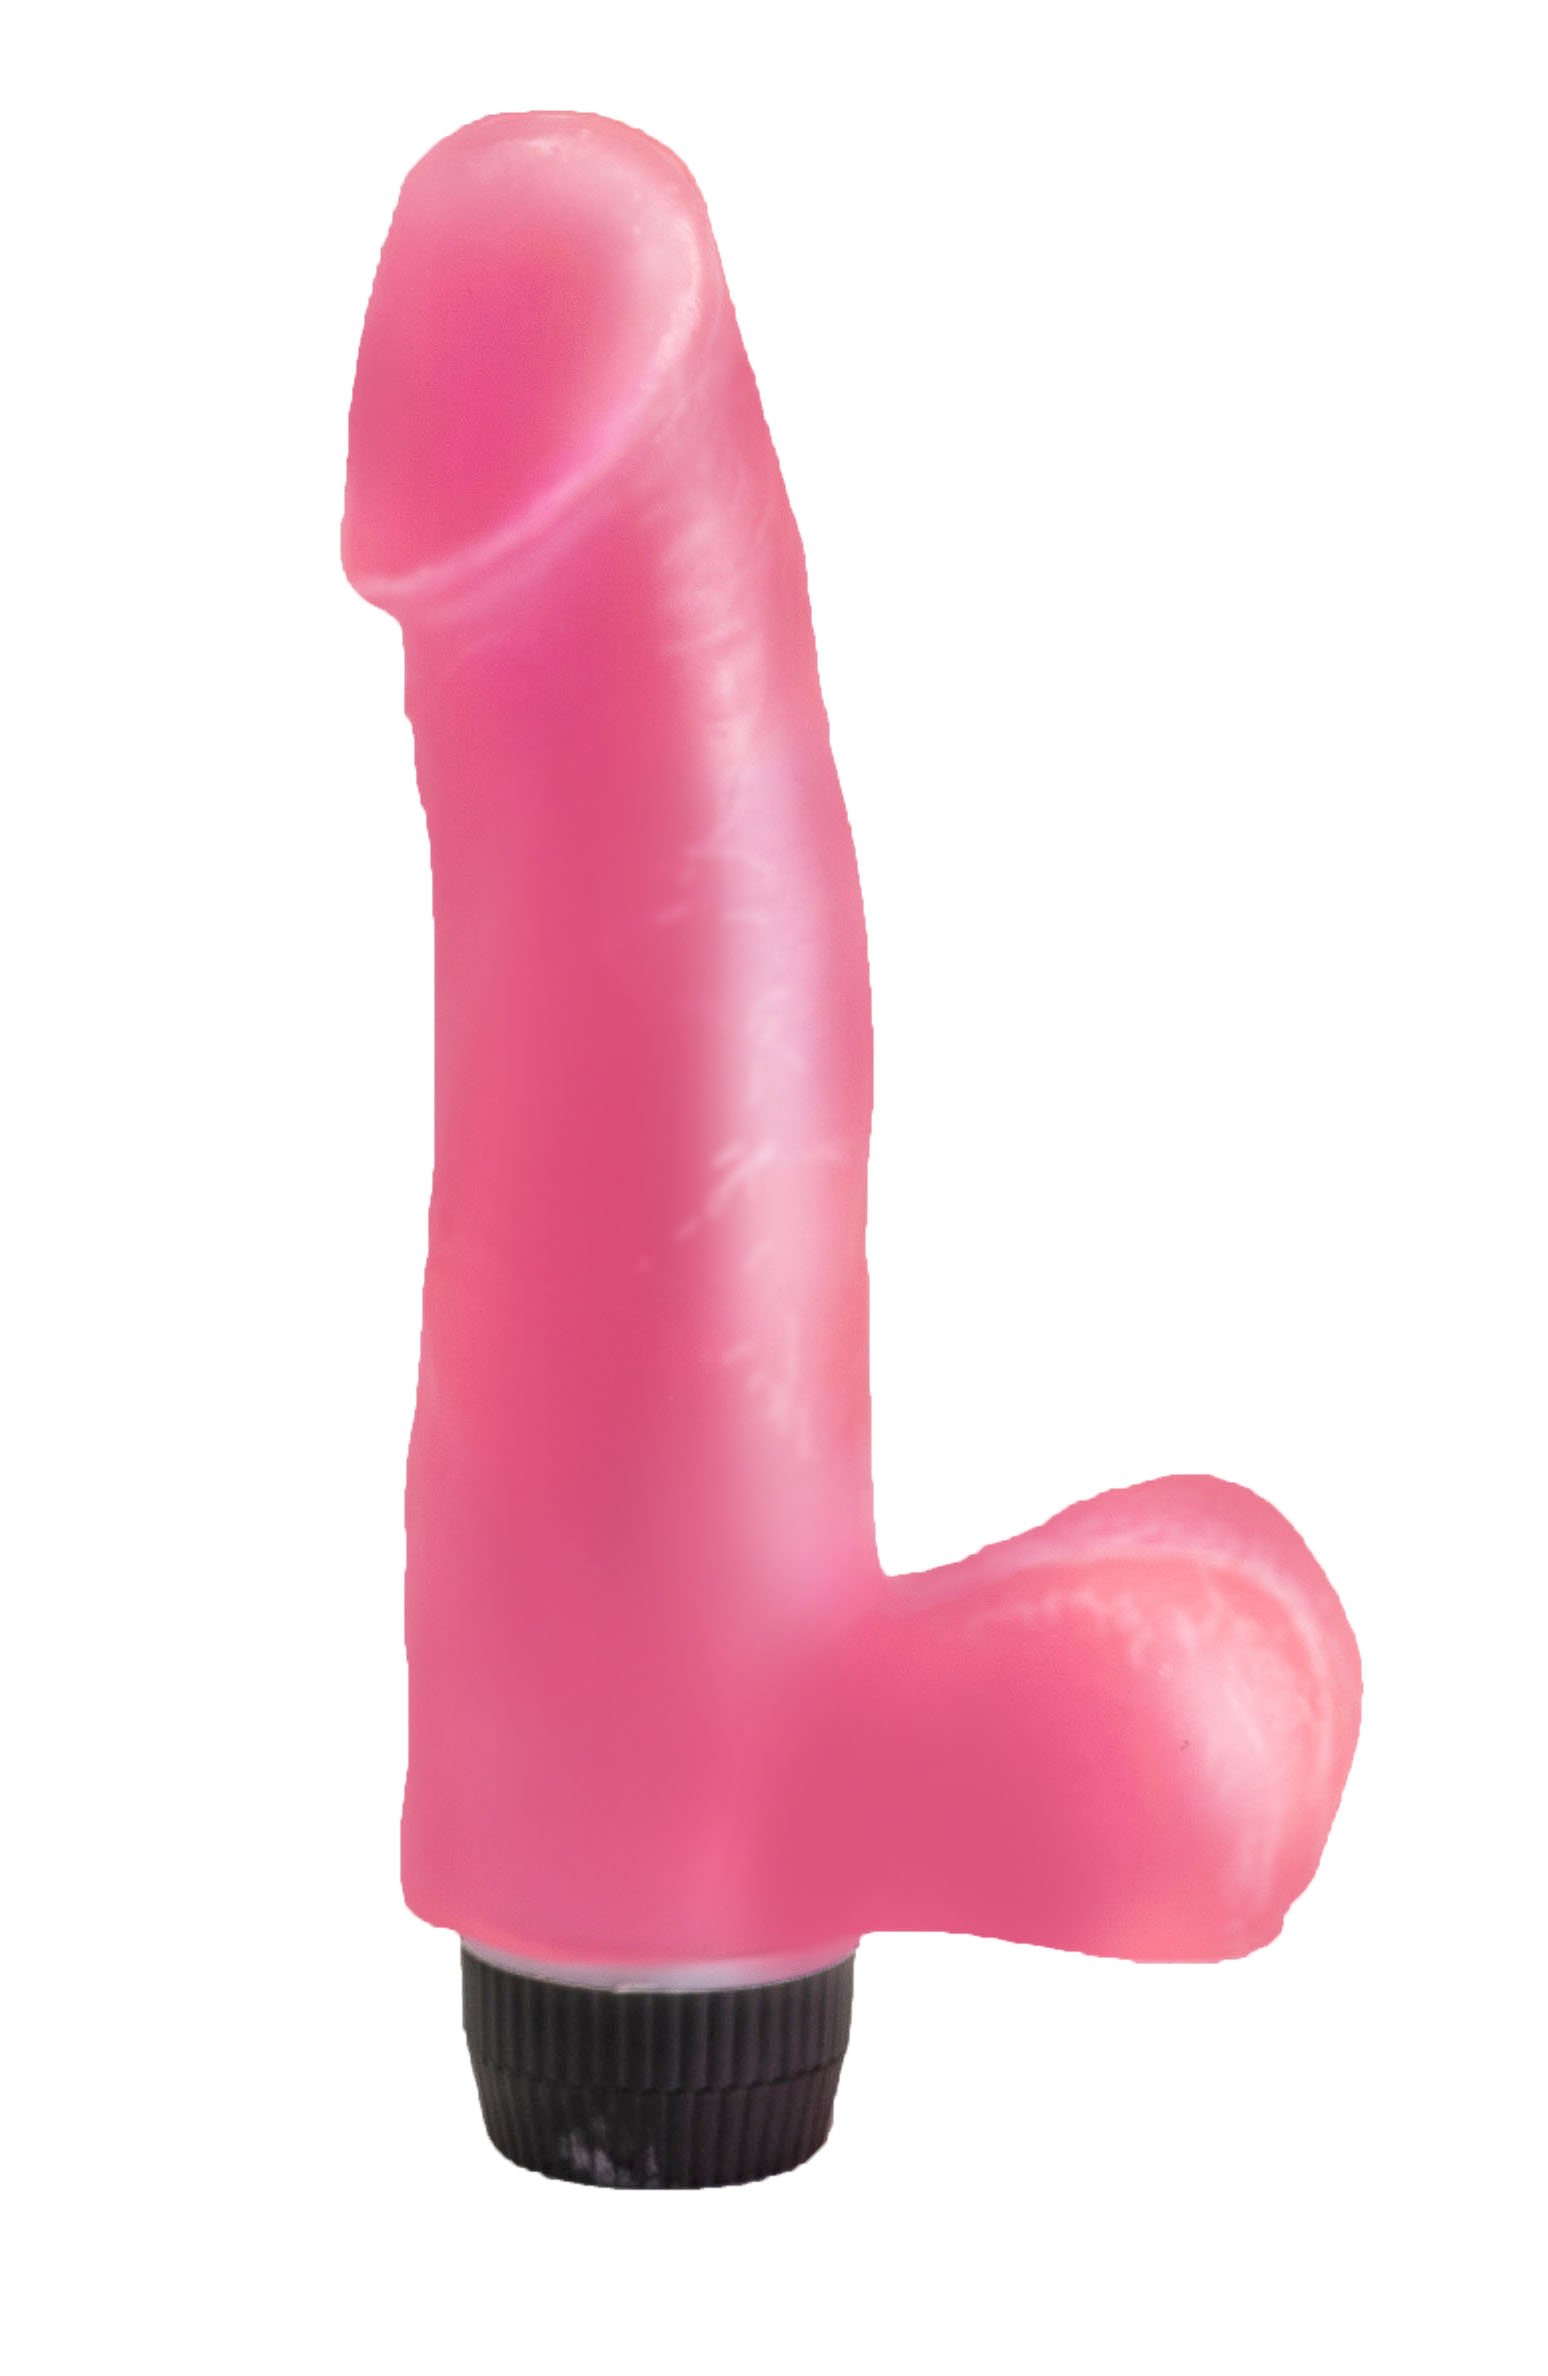 Реалистик гелевый розовый вибратор для женщин lovetoy, 19 см, LoveToy, Россия